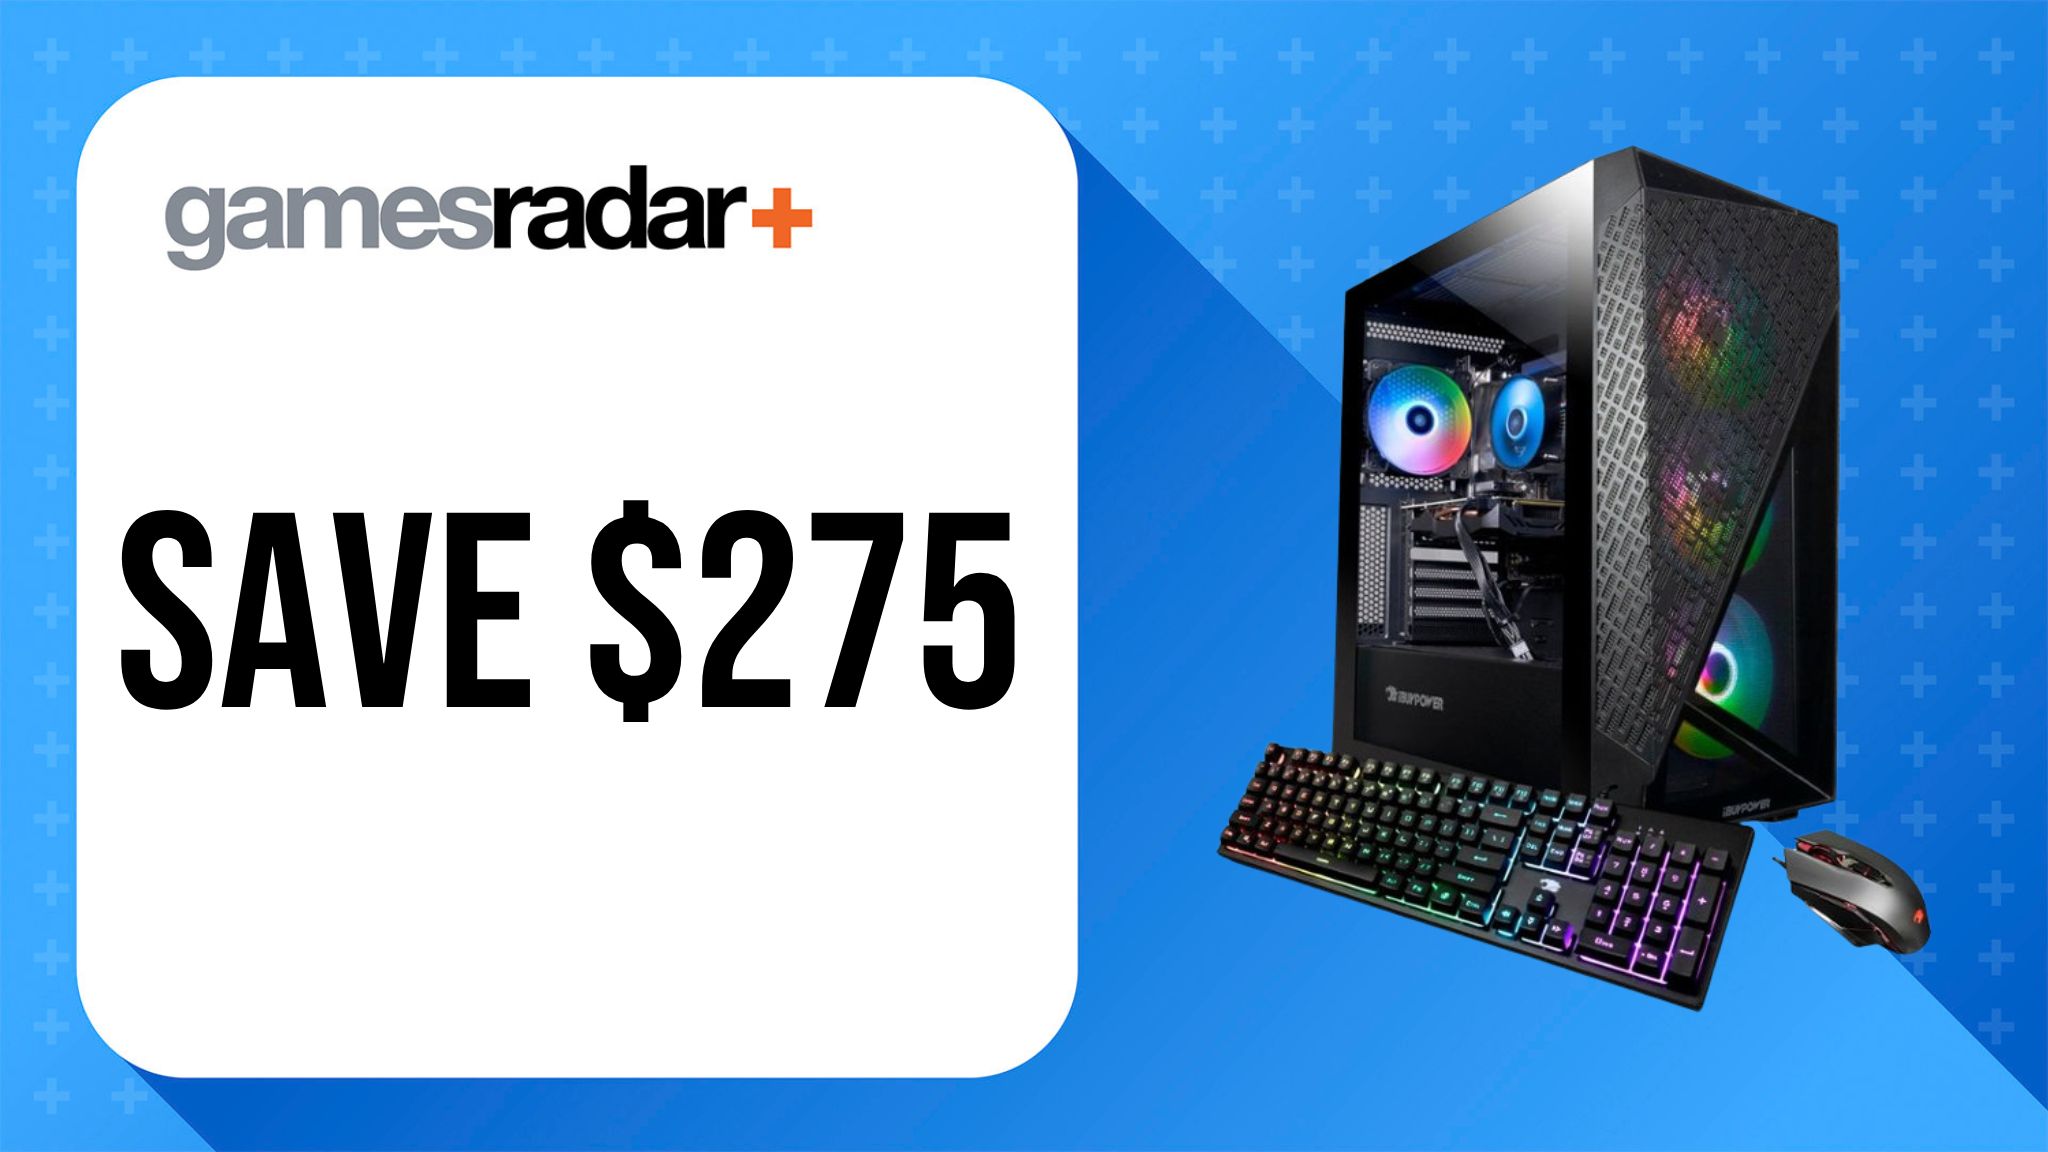 Imagen de la oferta de iBUYPOWER SlateMESH Gaming Desktop con sello de ahorro de $275 y fondo azul